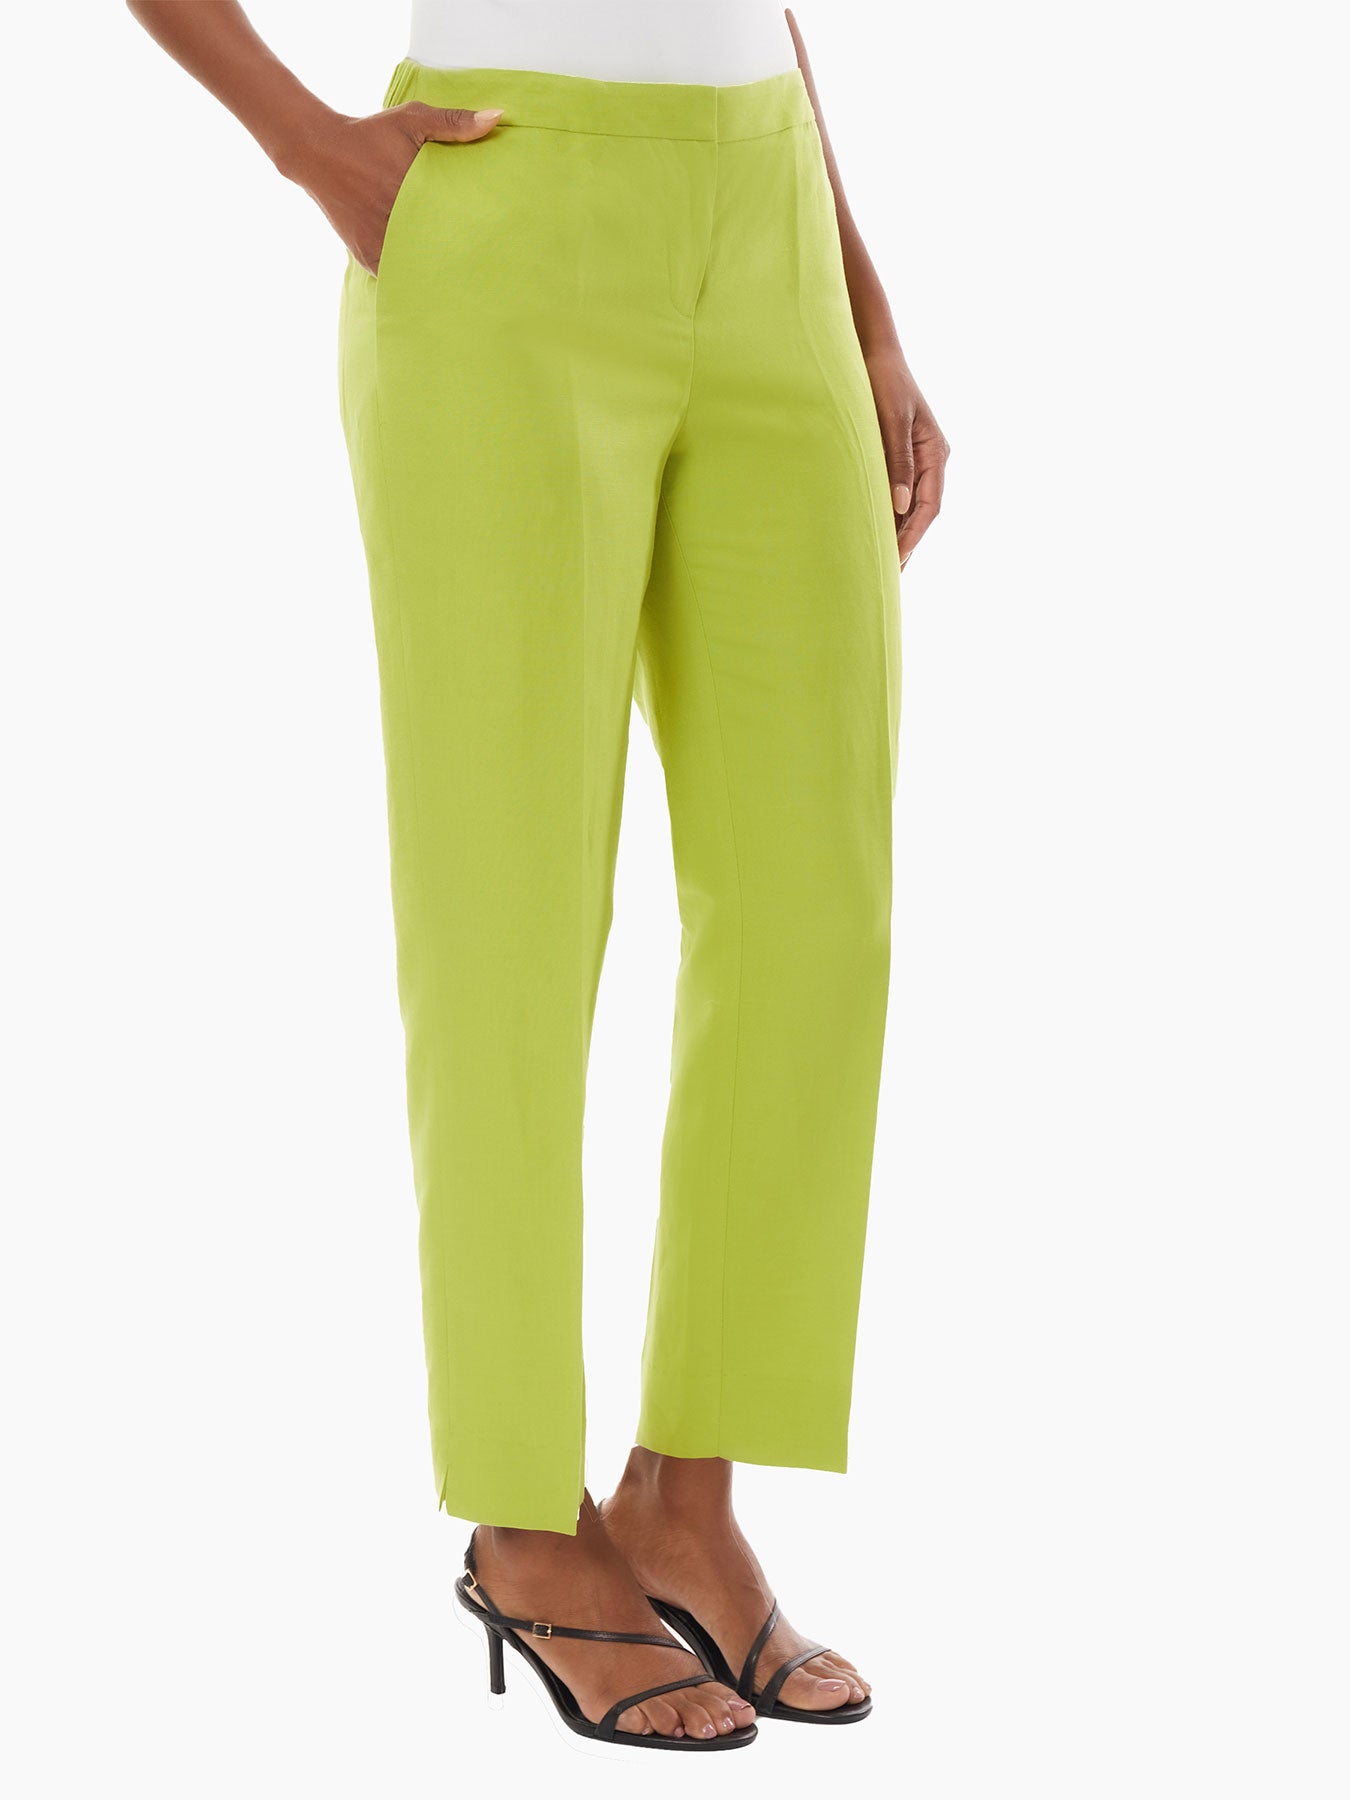 Bette & Court, Pants & Jumpsuits, Bette Court Size 6 Lime Green Capri  Pants